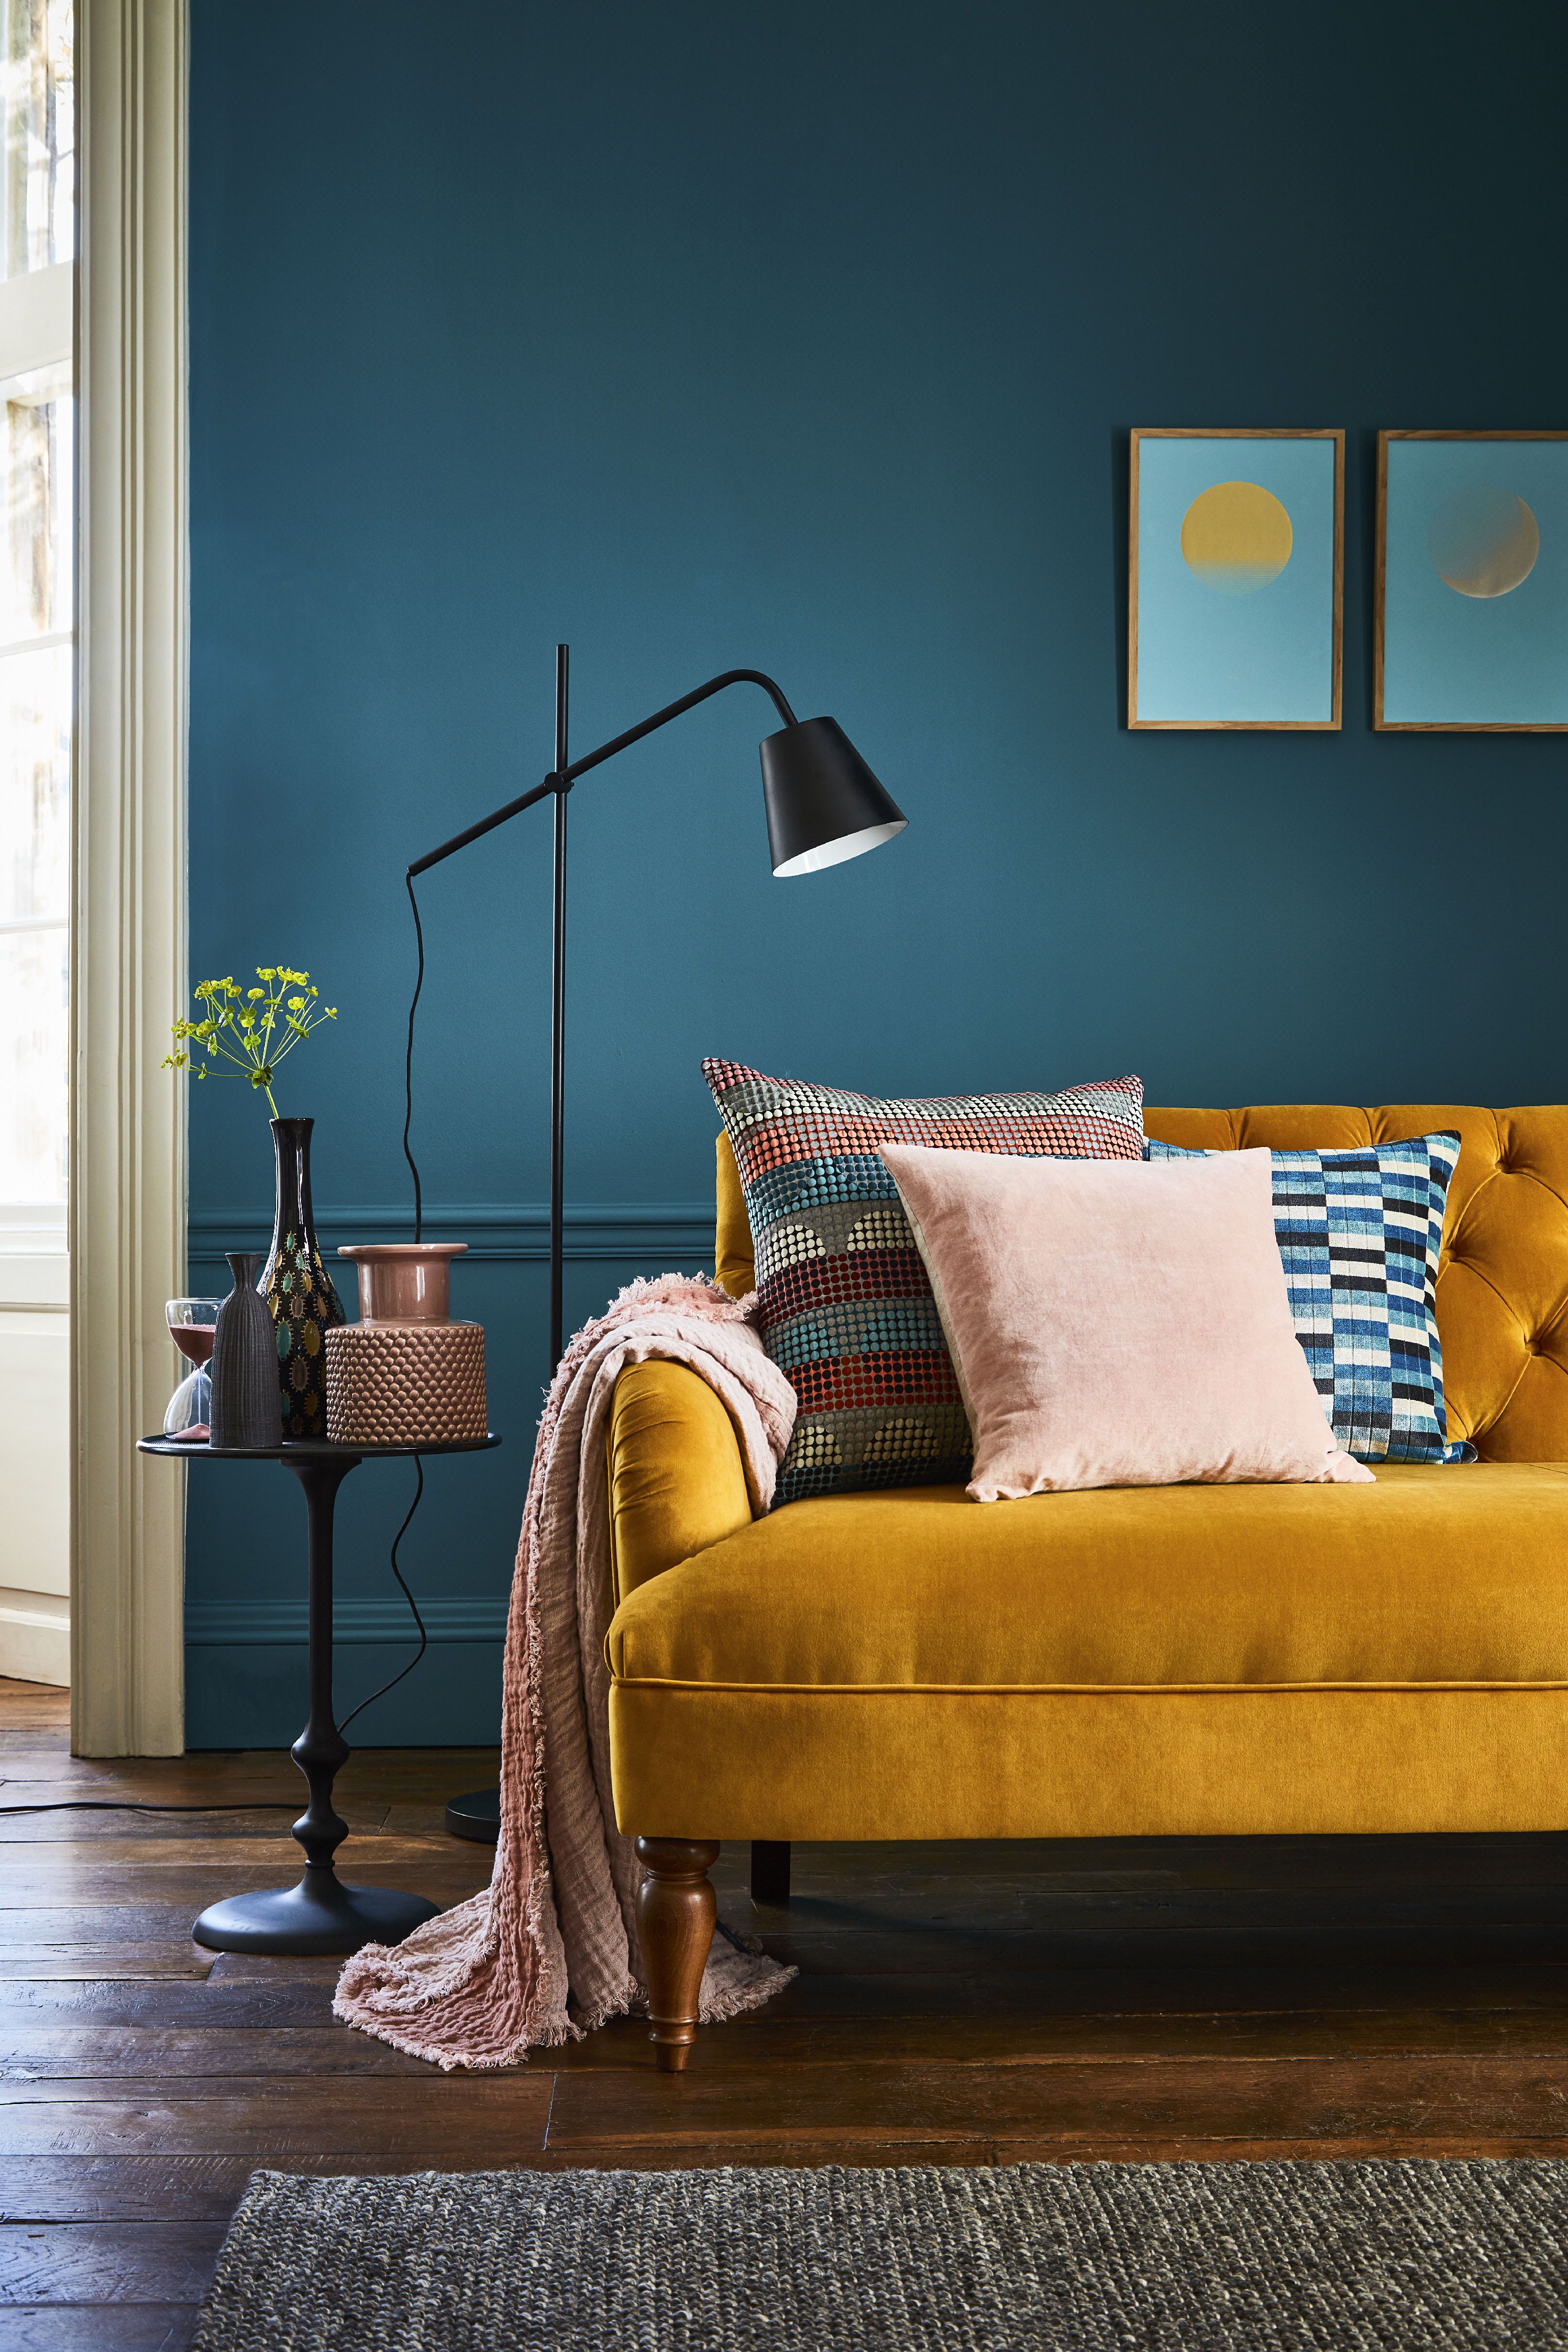 Sala com parede pintada com cor azul intenso. Um sofá amarelo mostarda dá contraste no ambiente.